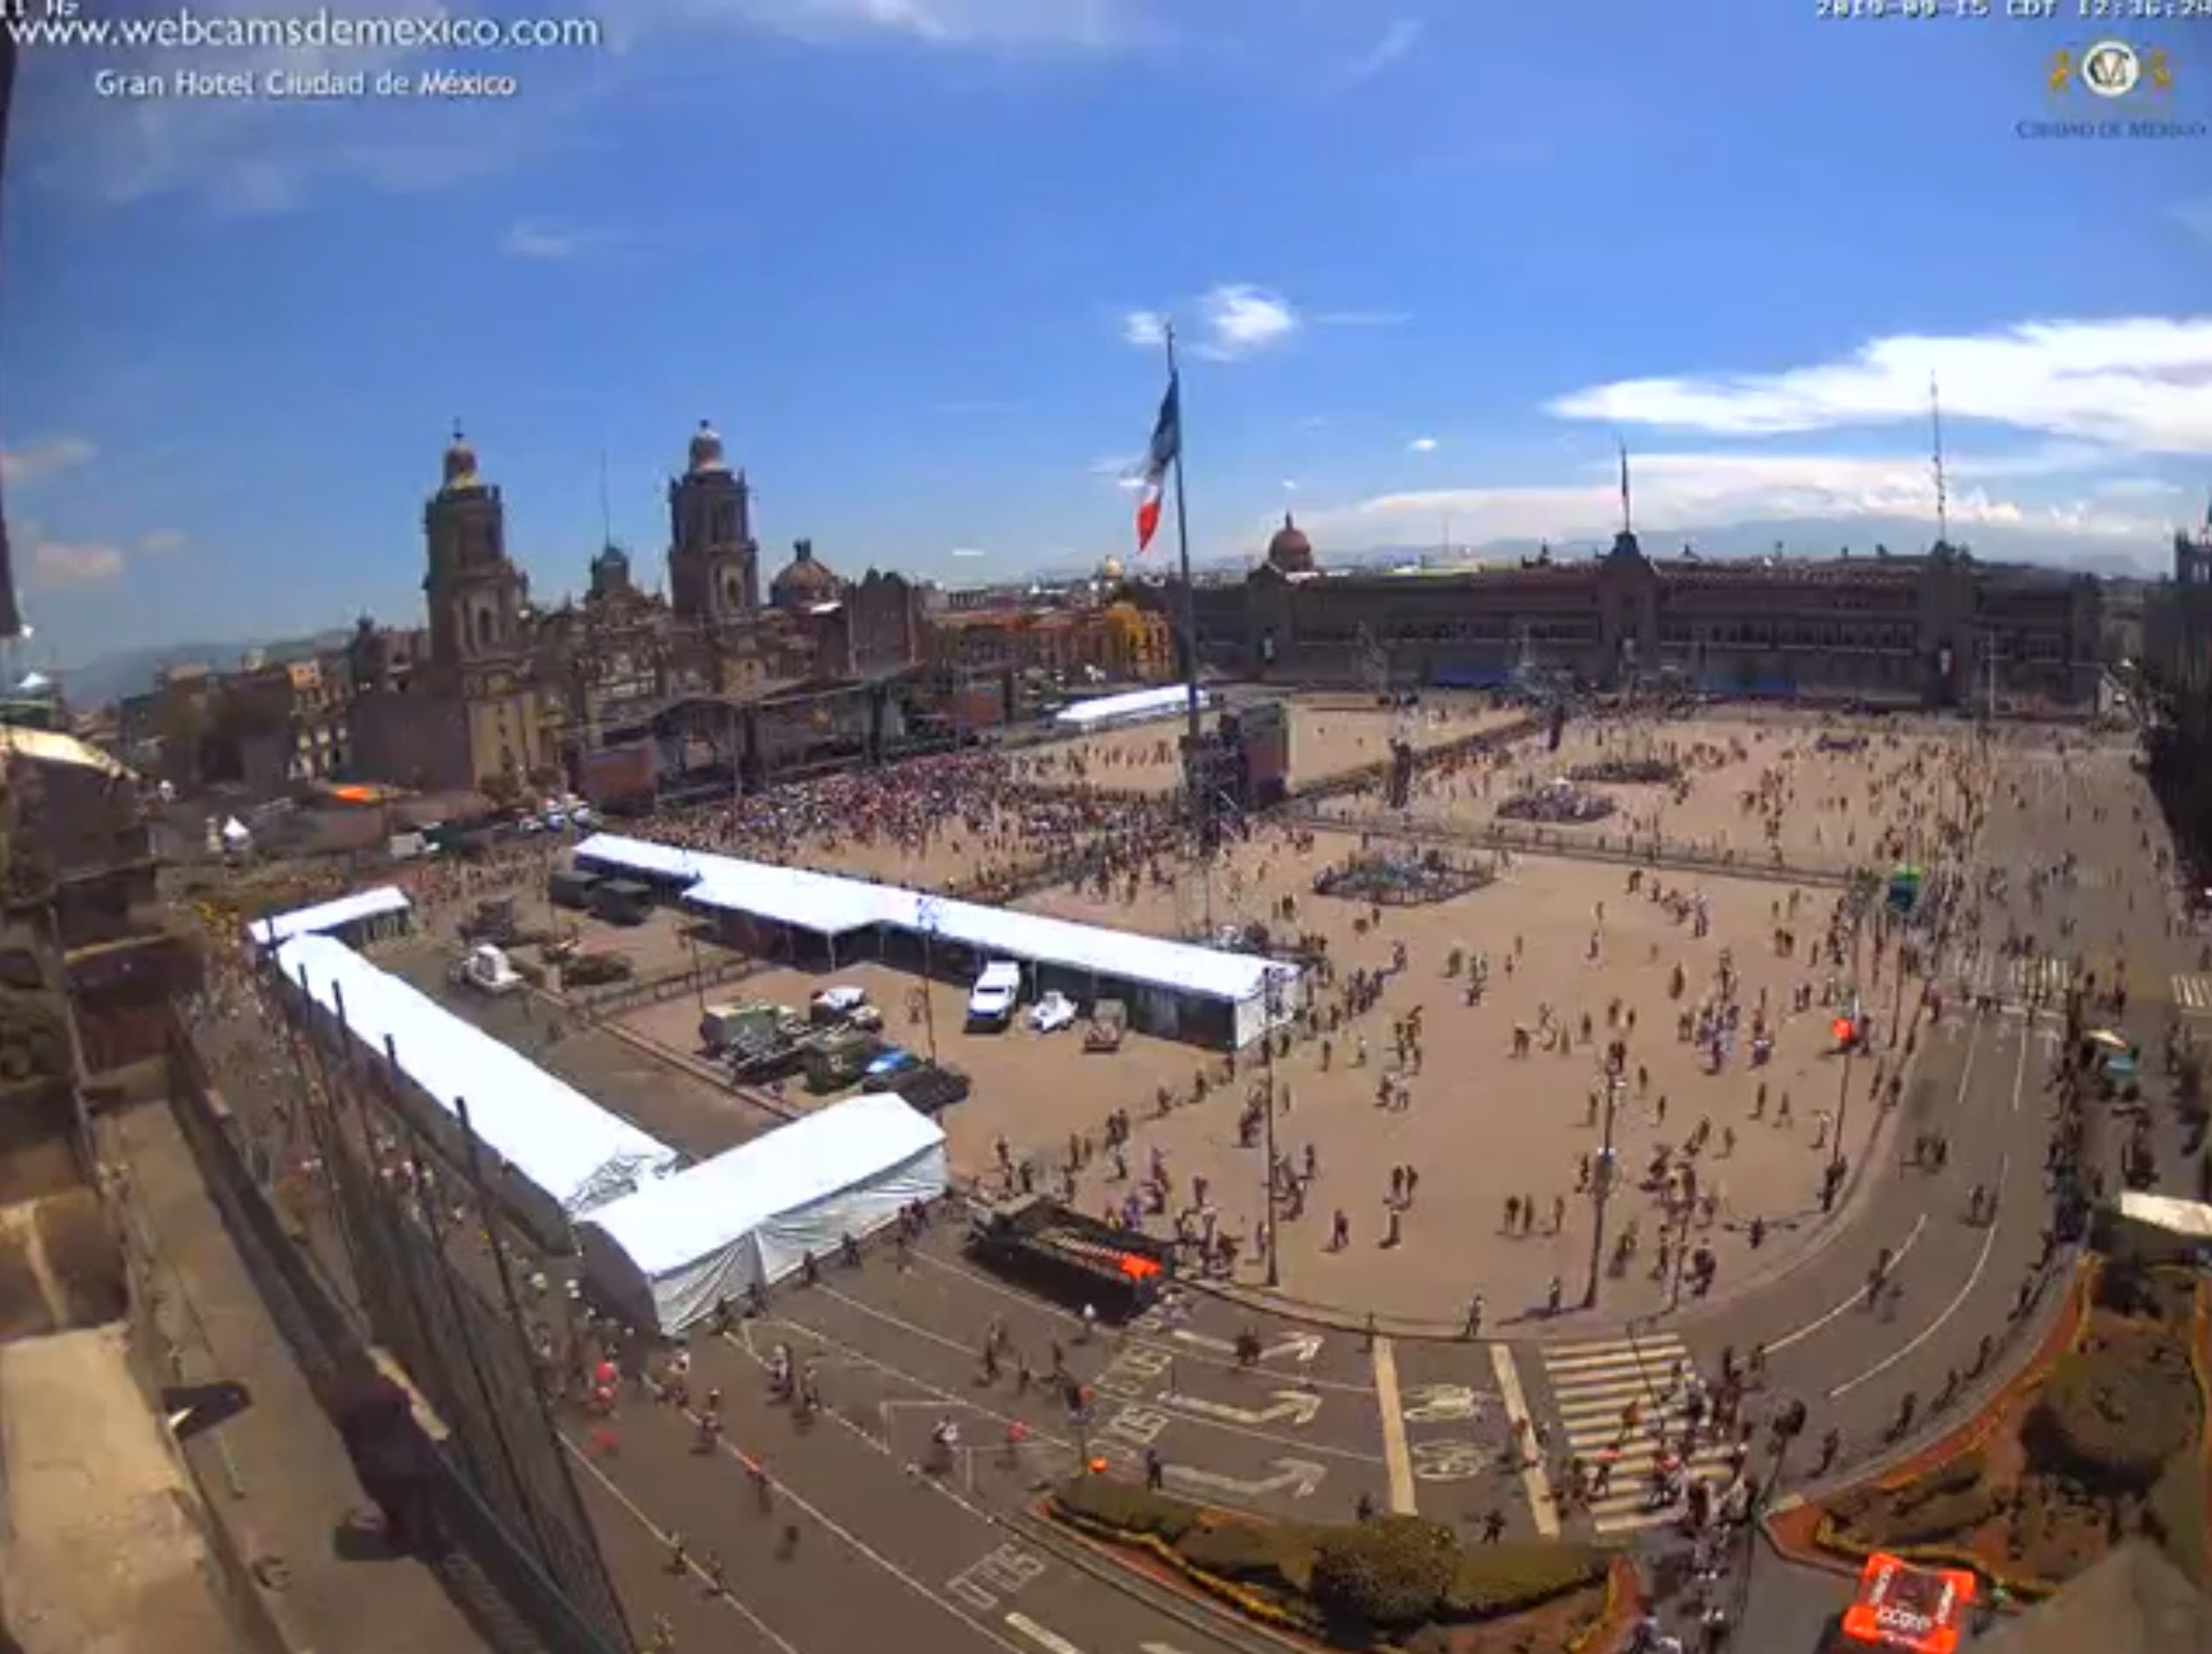 Las personas han comenzado a llegar al Zócalo de la Ciudad de México (Foto: Webcams de México)